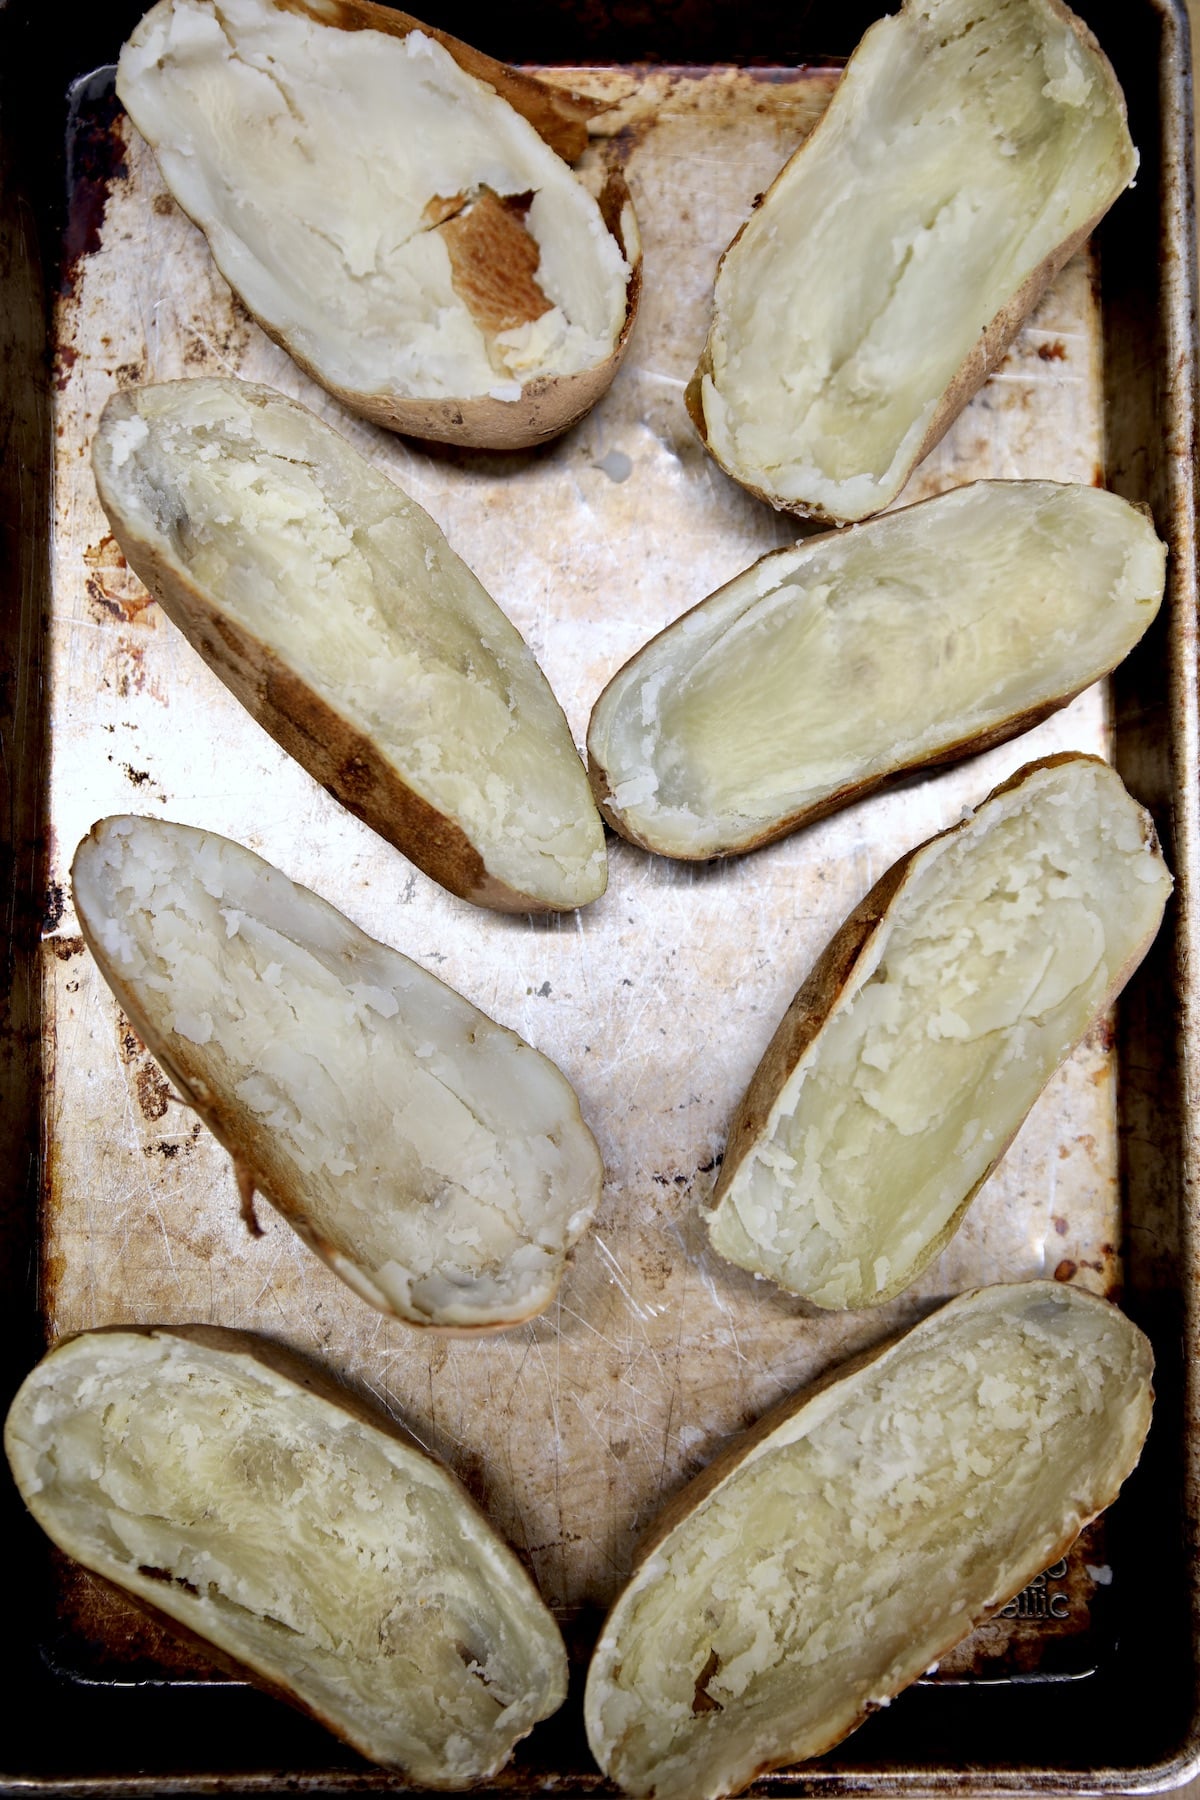 Potato skins halves on a sheet pan.